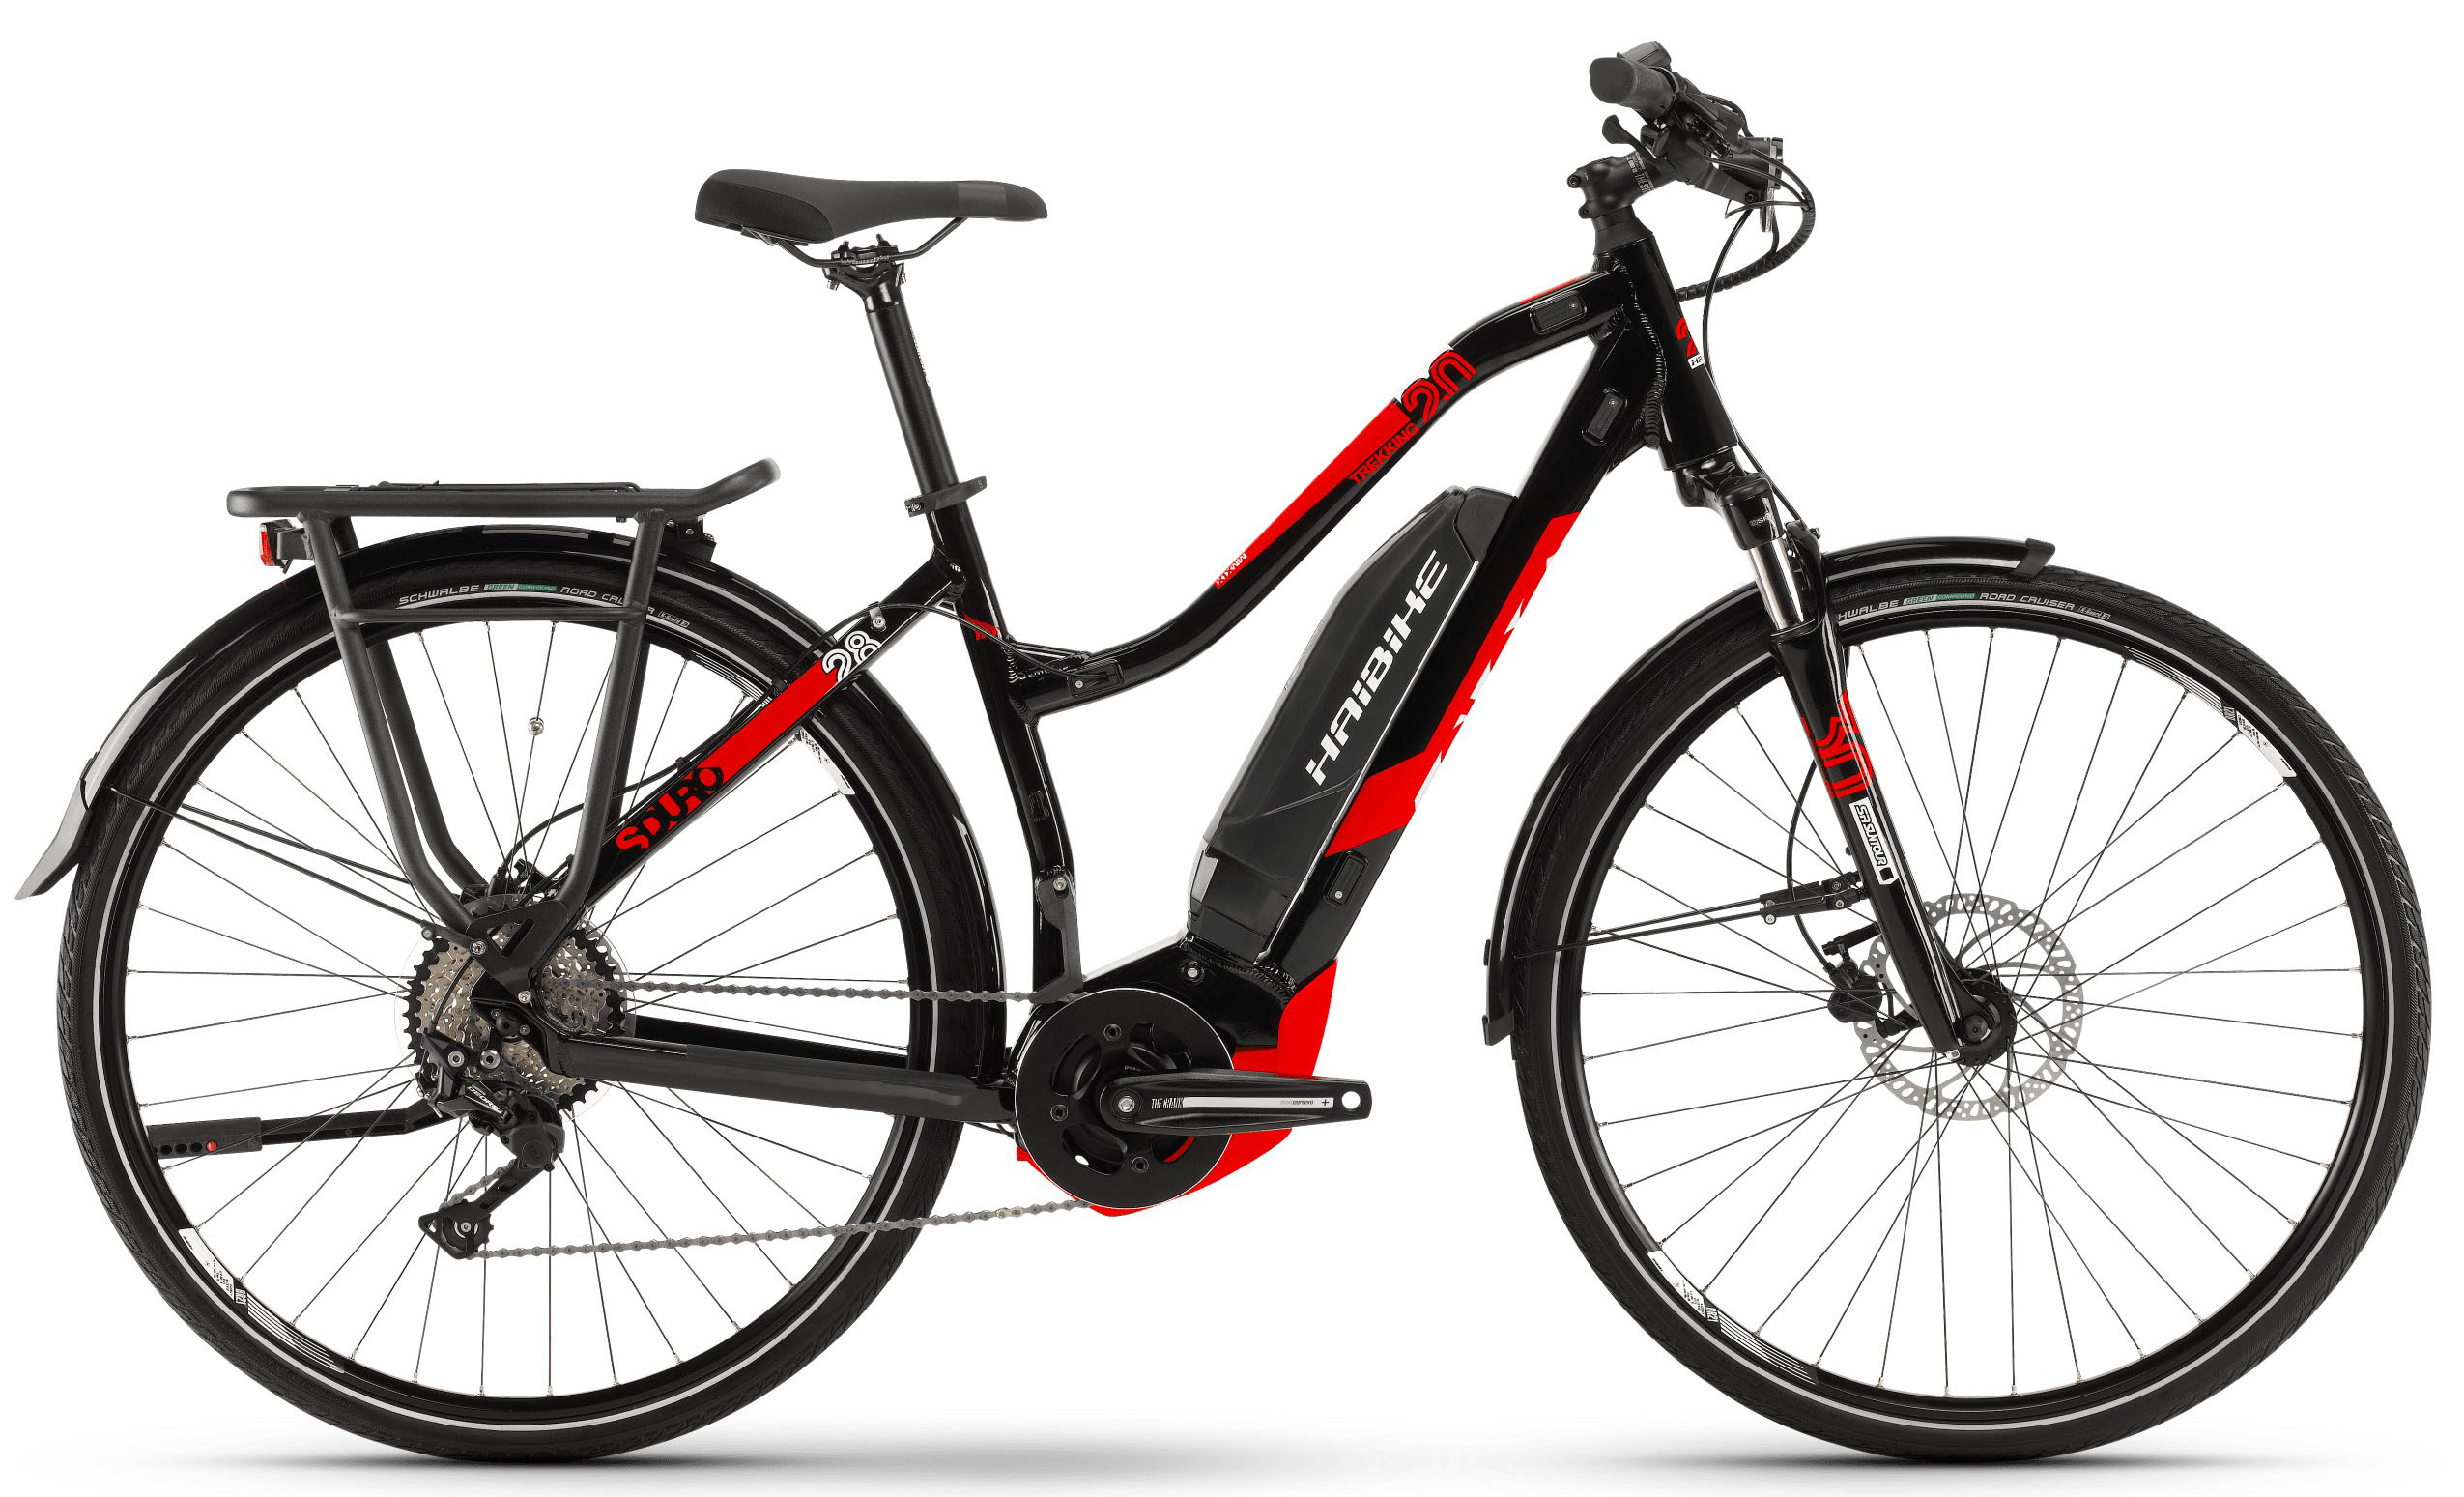  Отзывы о Трехколесный детский велосипед Haibike SDURO Trekking 2.0 Damen 500Wh 10G Deore 2019